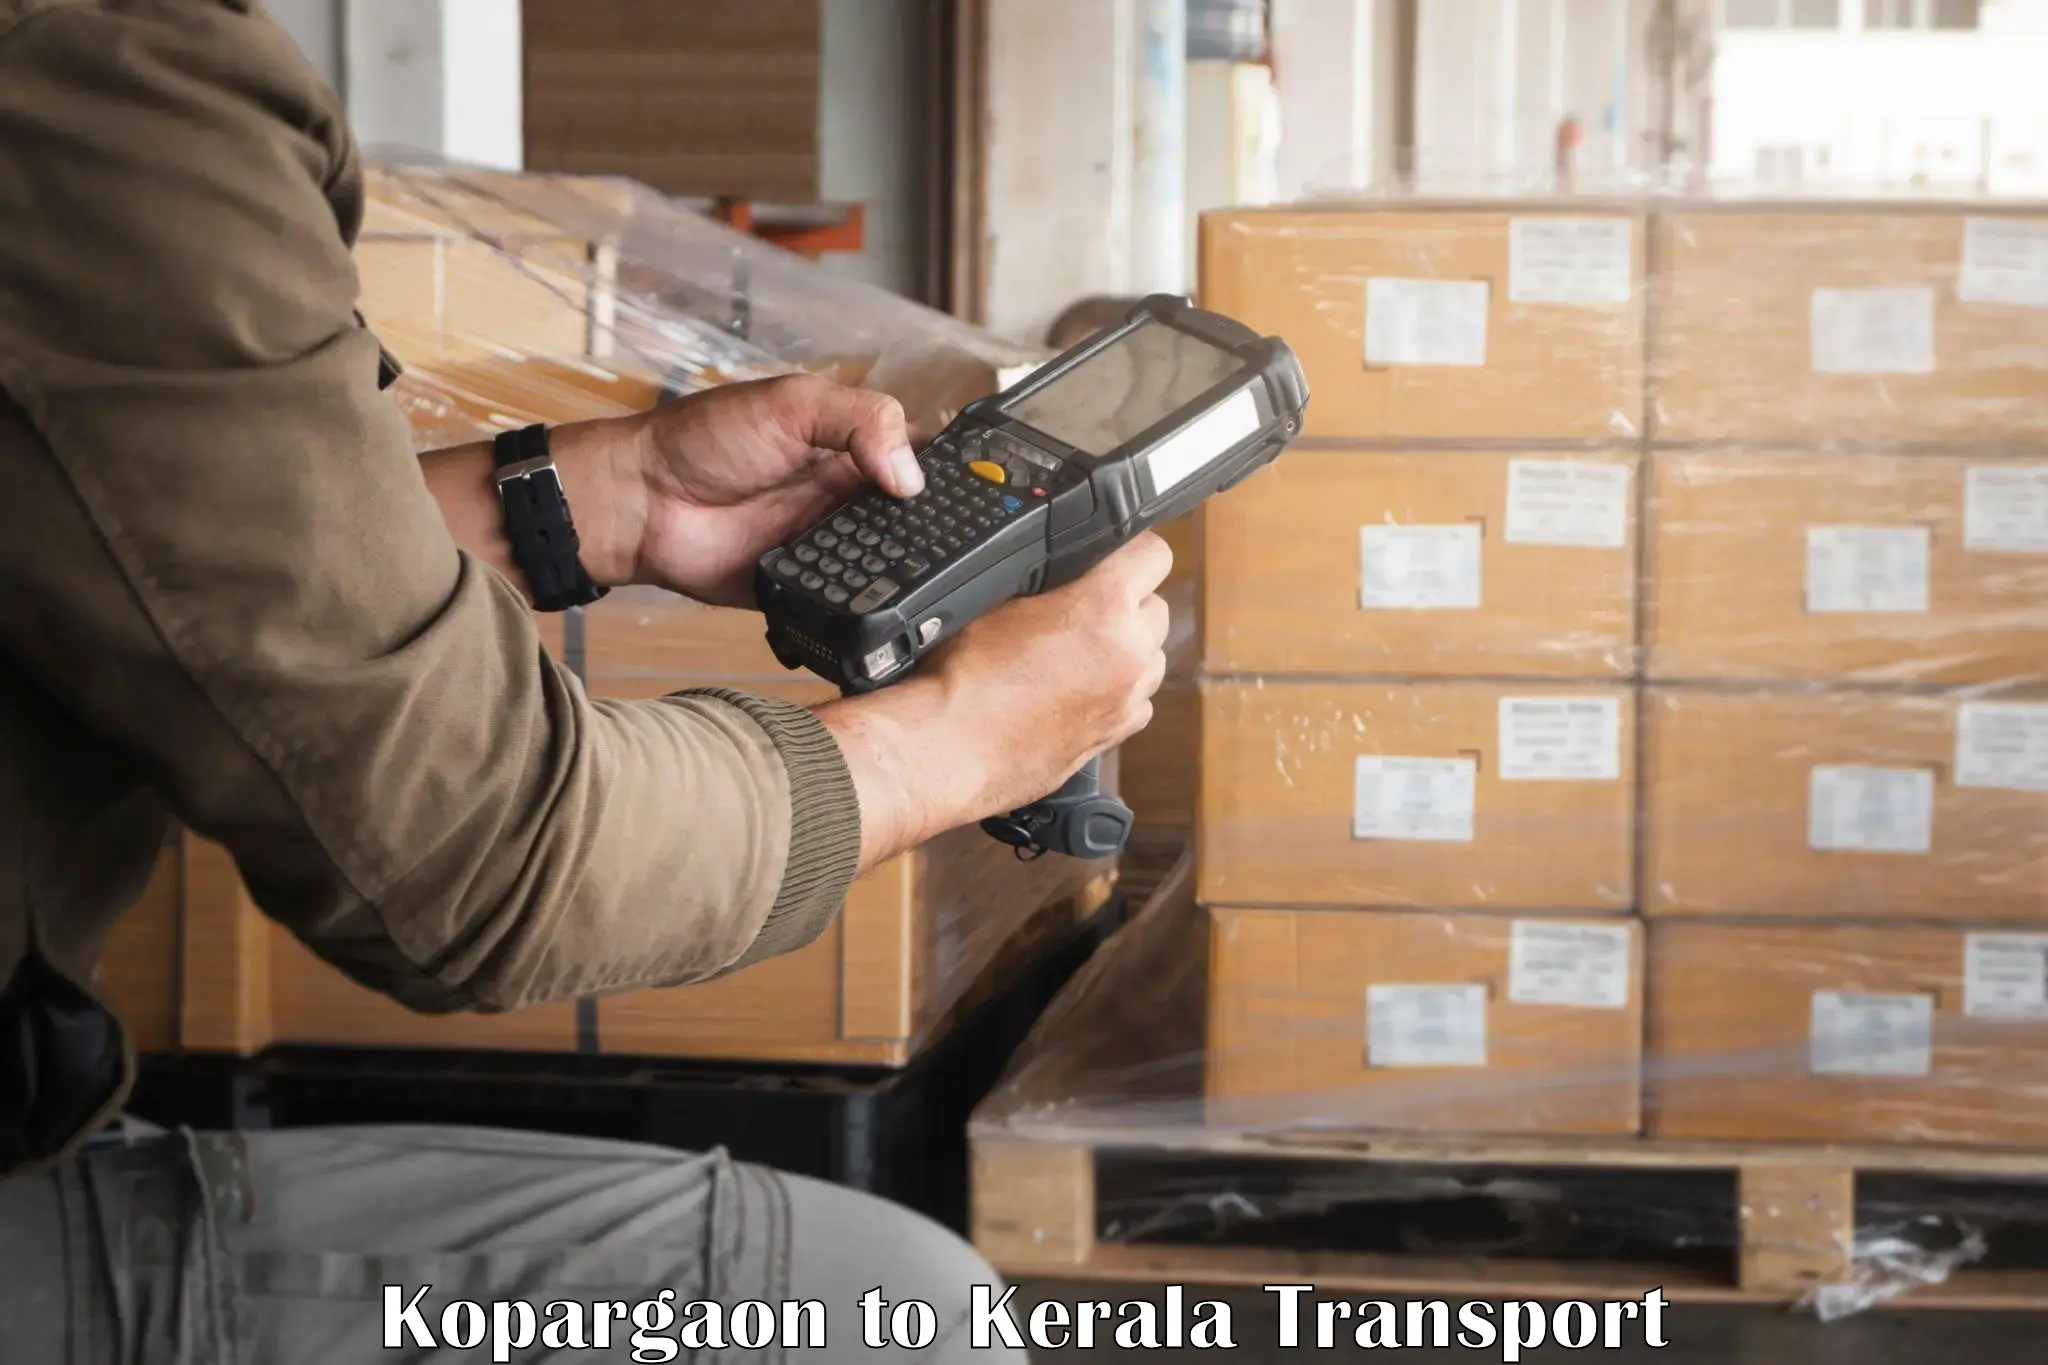 Interstate transport services Kopargaon to Kallikkad